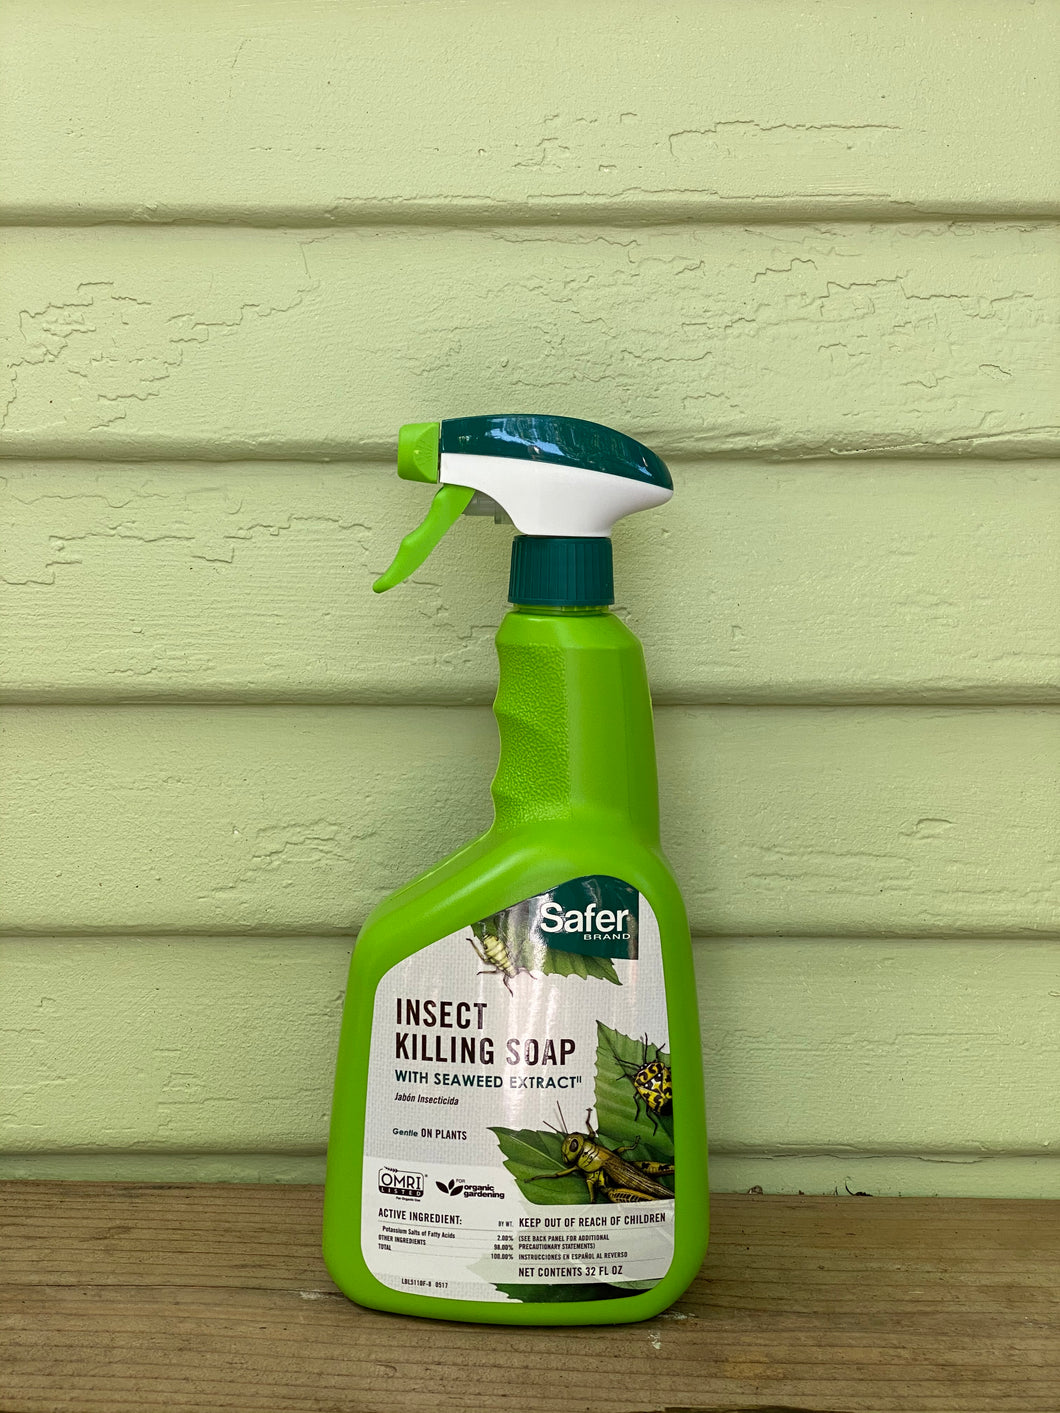 Insect Killing Soap - Mickey Hargitay Plants